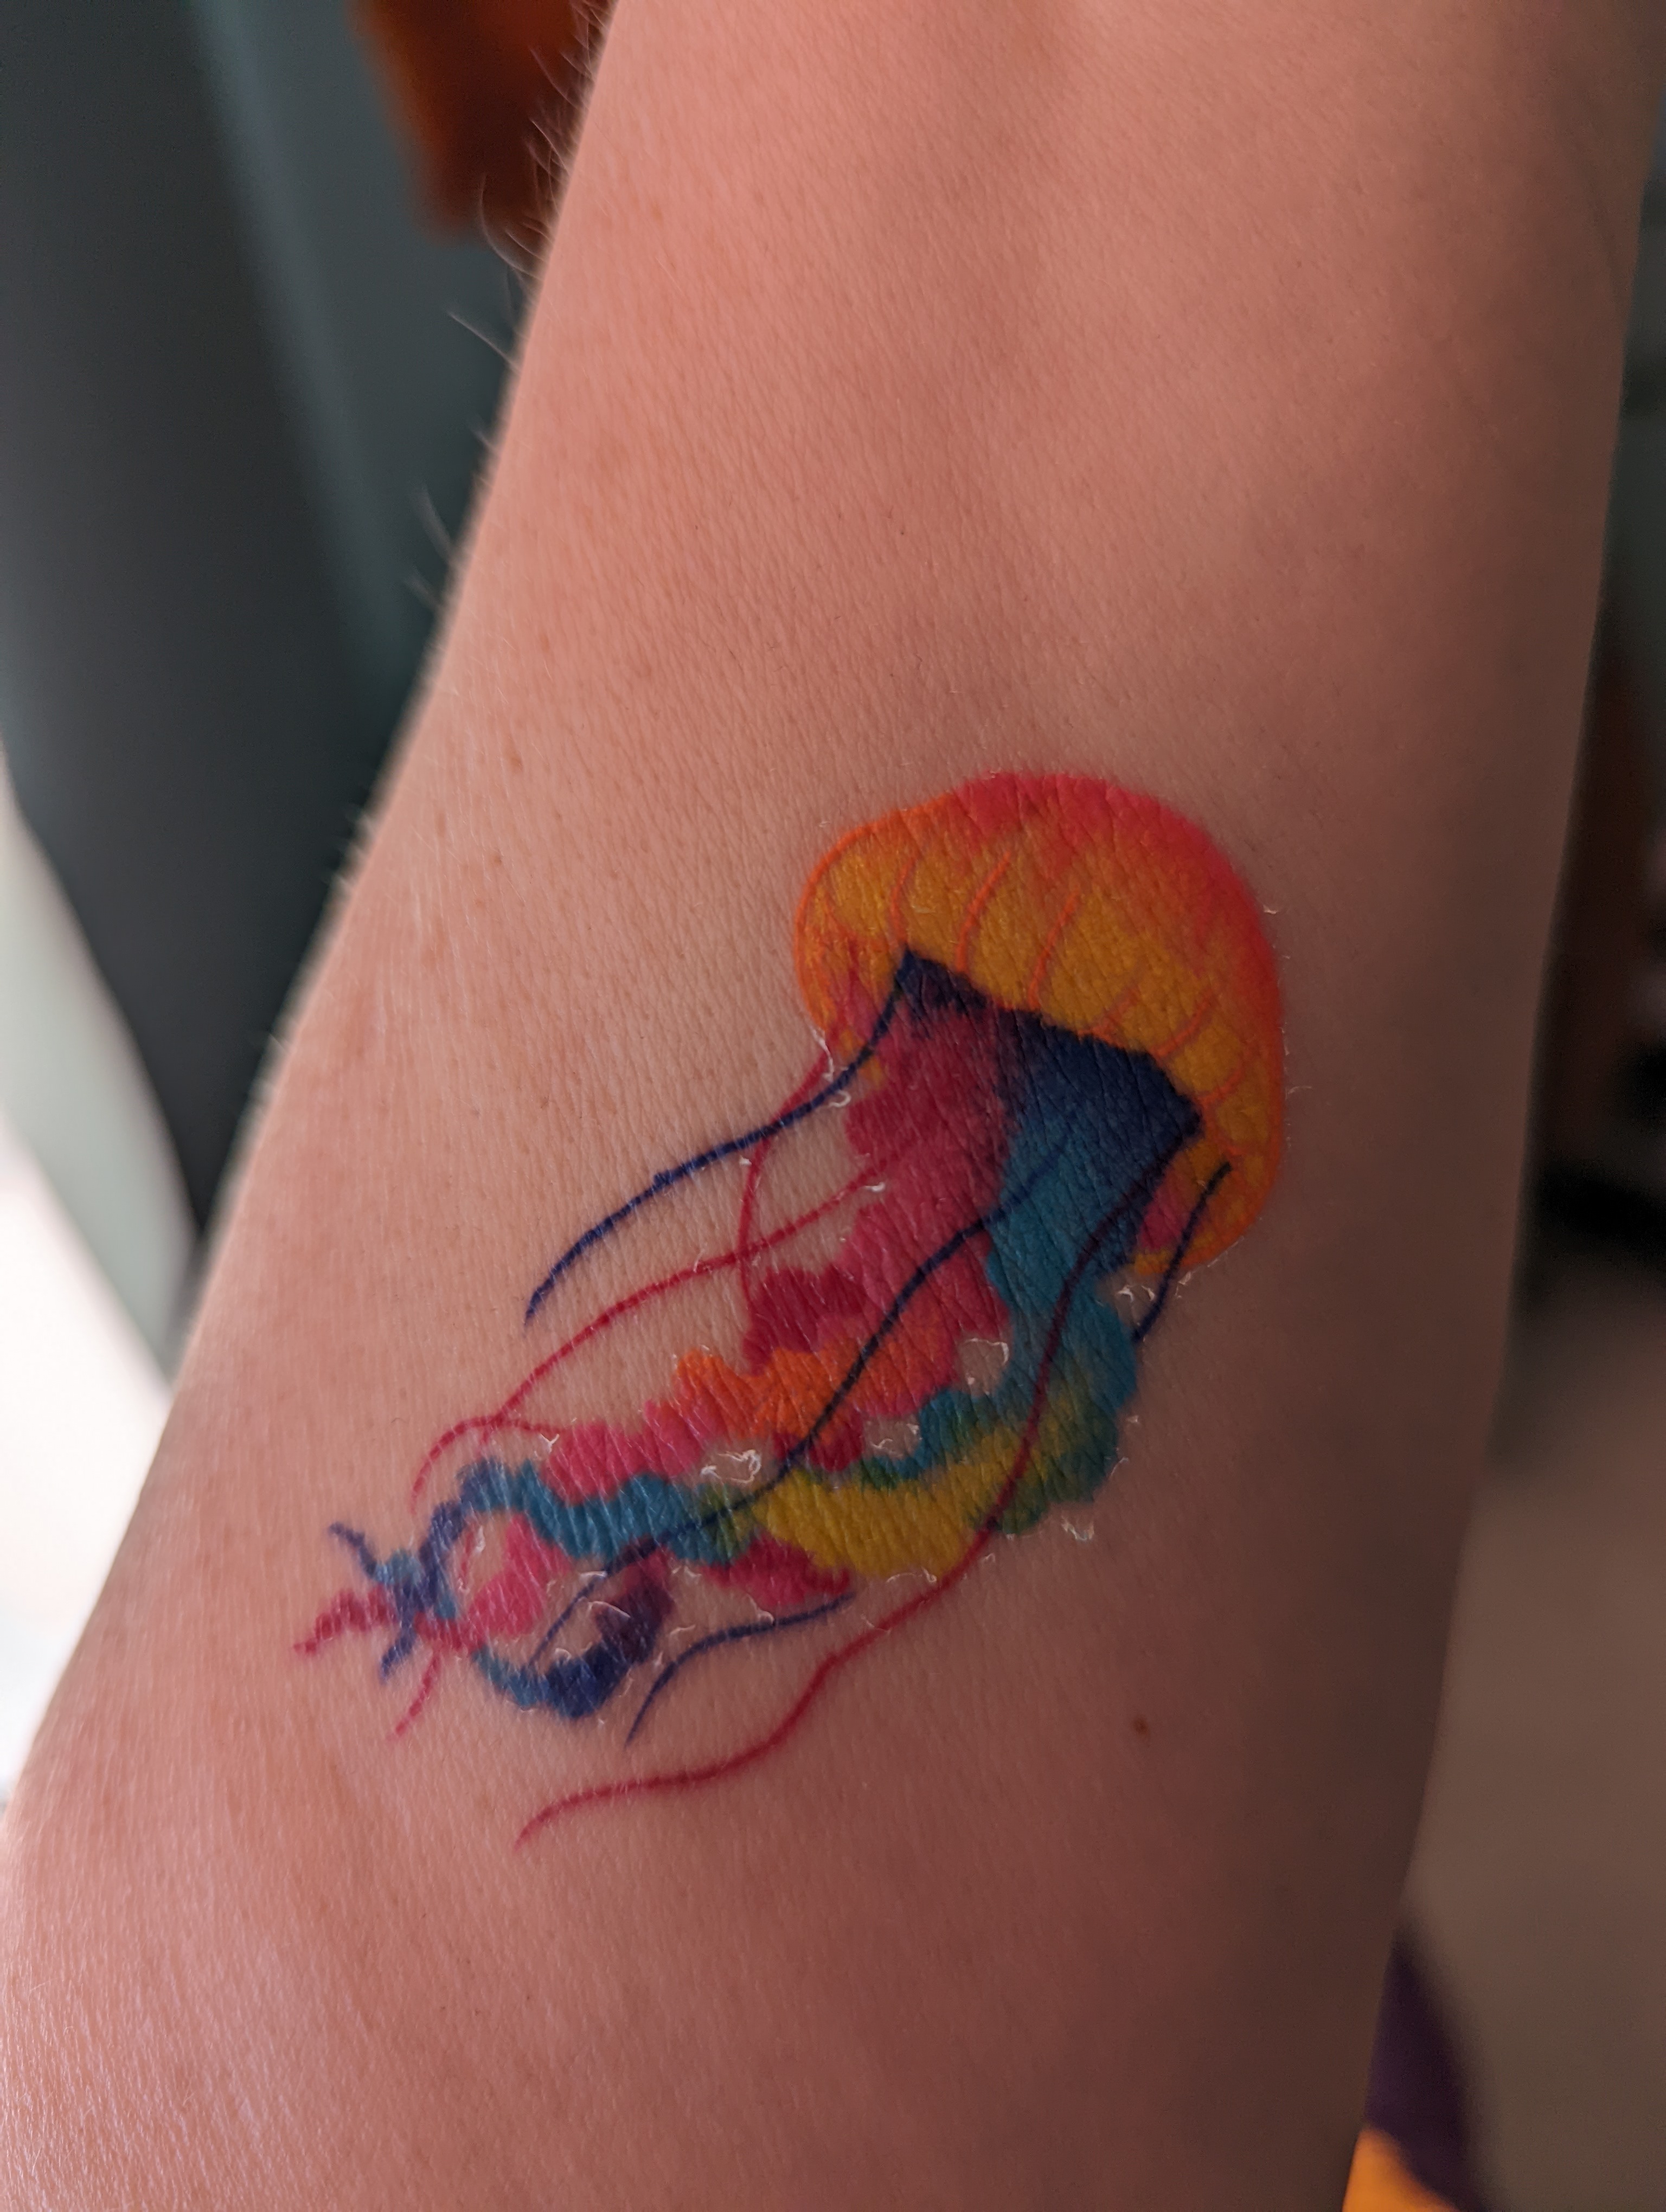 Jellyfish tattoo tattooed on the wrist, micro-realistic